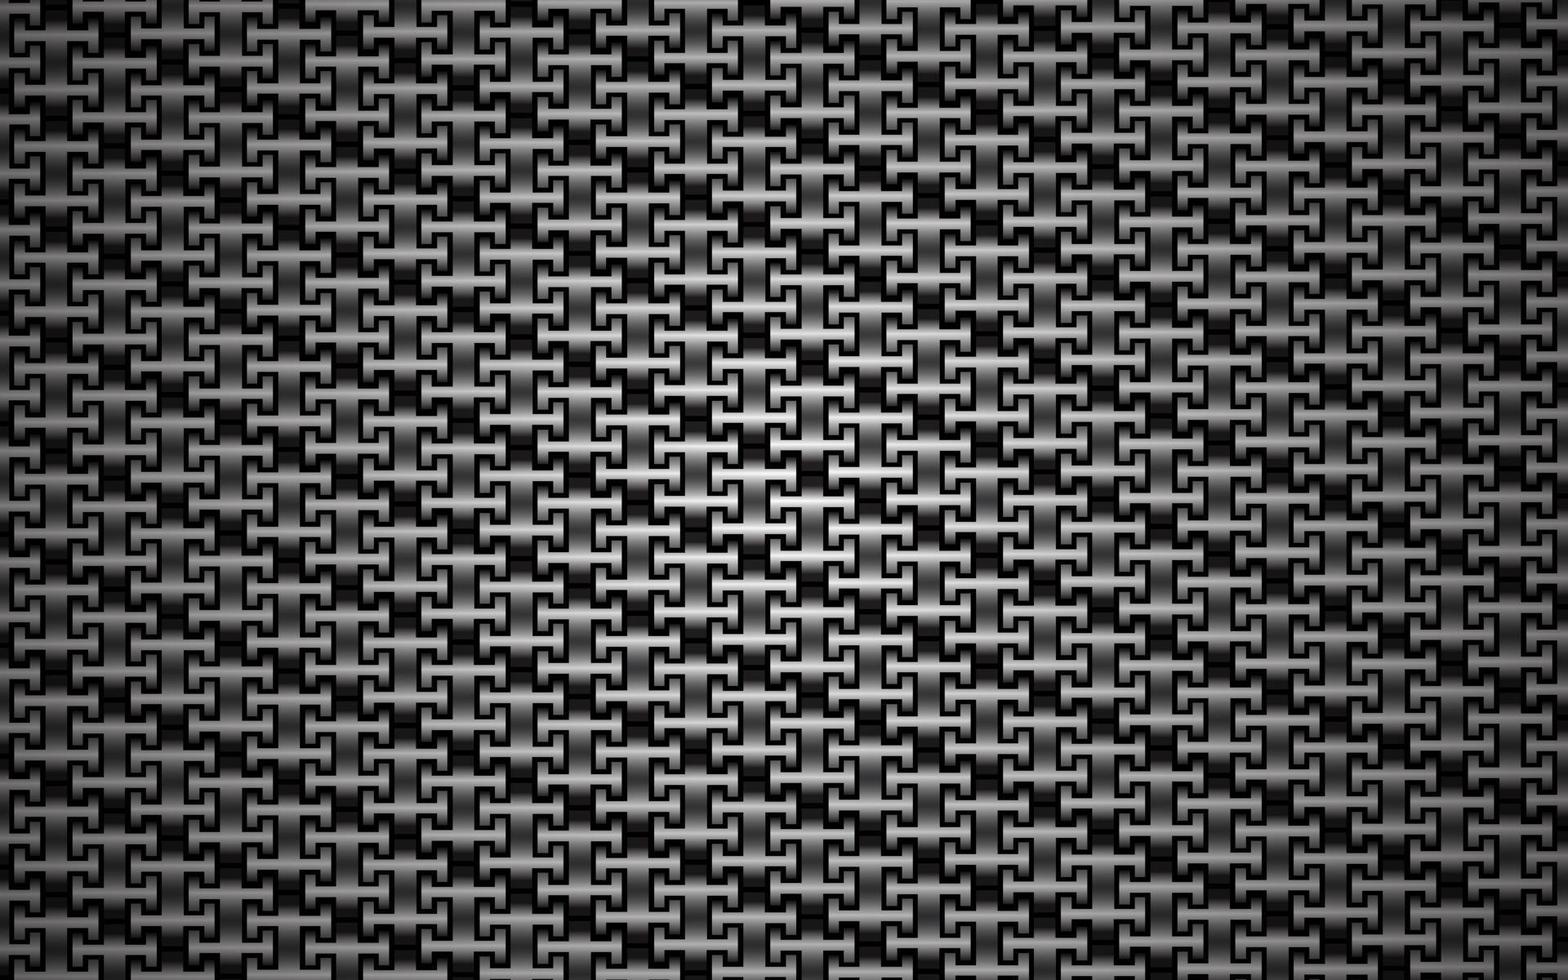 abstrakt bakgrundsstruktur. svart och grått koltexturerat upprepande mönster. metalliskt kedjemönster. järnmetallkedja vektor